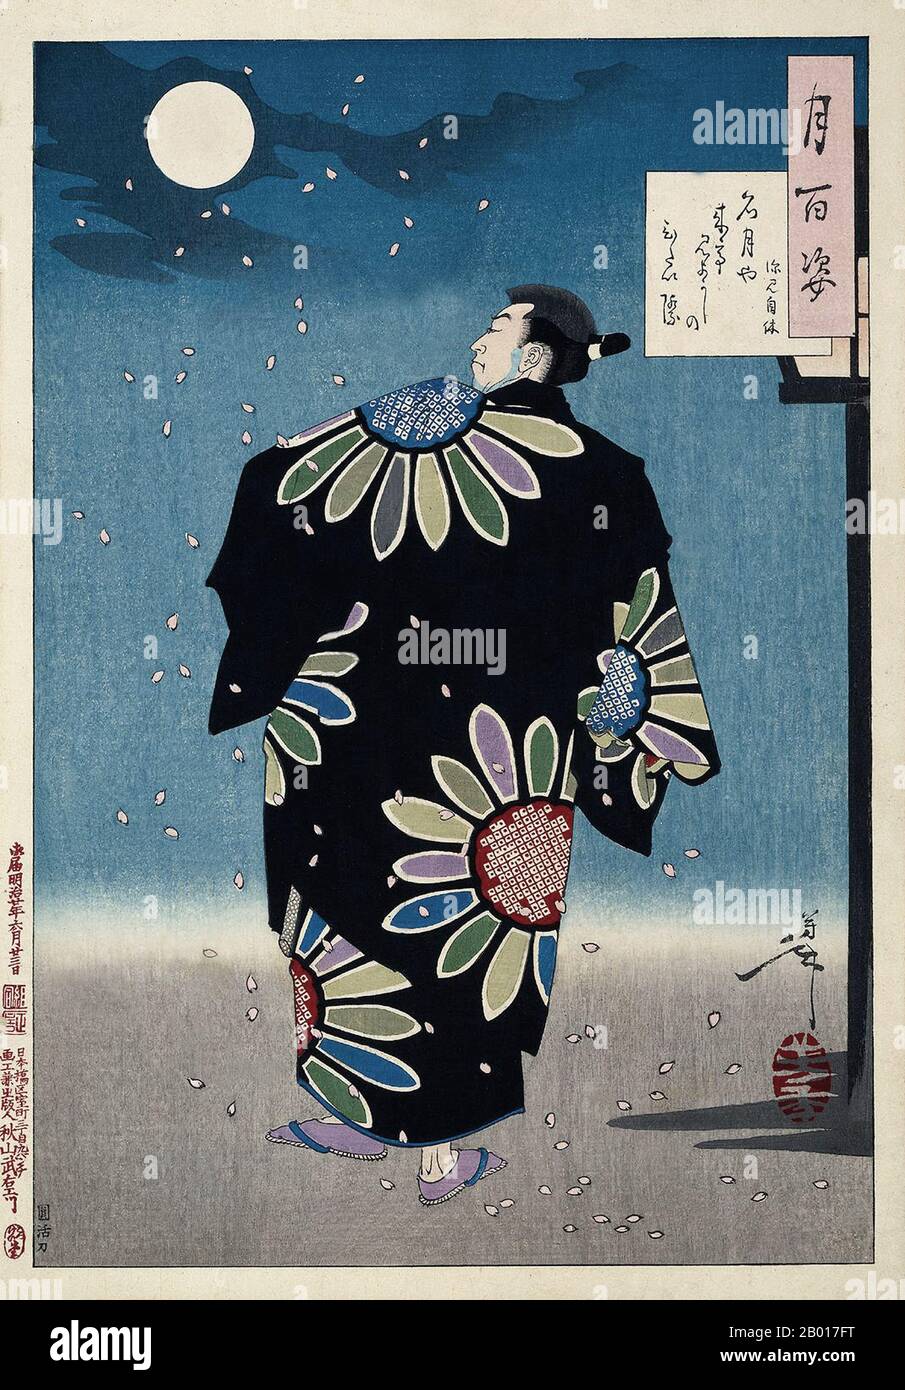 Japon: 'Fukami Jikyu'.Impression de blocs de bois Ukiyo-e de la série 'One Huntcent aspects of the Moon' de Tsukioka Yoshitoshi (30 avril 1839 - 9 juin 1892), 1887.Fukami Jikyu, un héros de fiction japonais - de réputation similaire à celle de Robin des Bois en Angleterre - marche fièrement dans son élégant kimono alors que des cerisiers en fleurs tombent autour de lui.Yoshitoshi crée le sentiment d'une soirée de printemps calme dans cette coupe de bois post-Edo.- à côté de sa signature dans la cartouche en haut à droite du tableau, Yoshitoshi a inclus un court poème. Banque D'Images